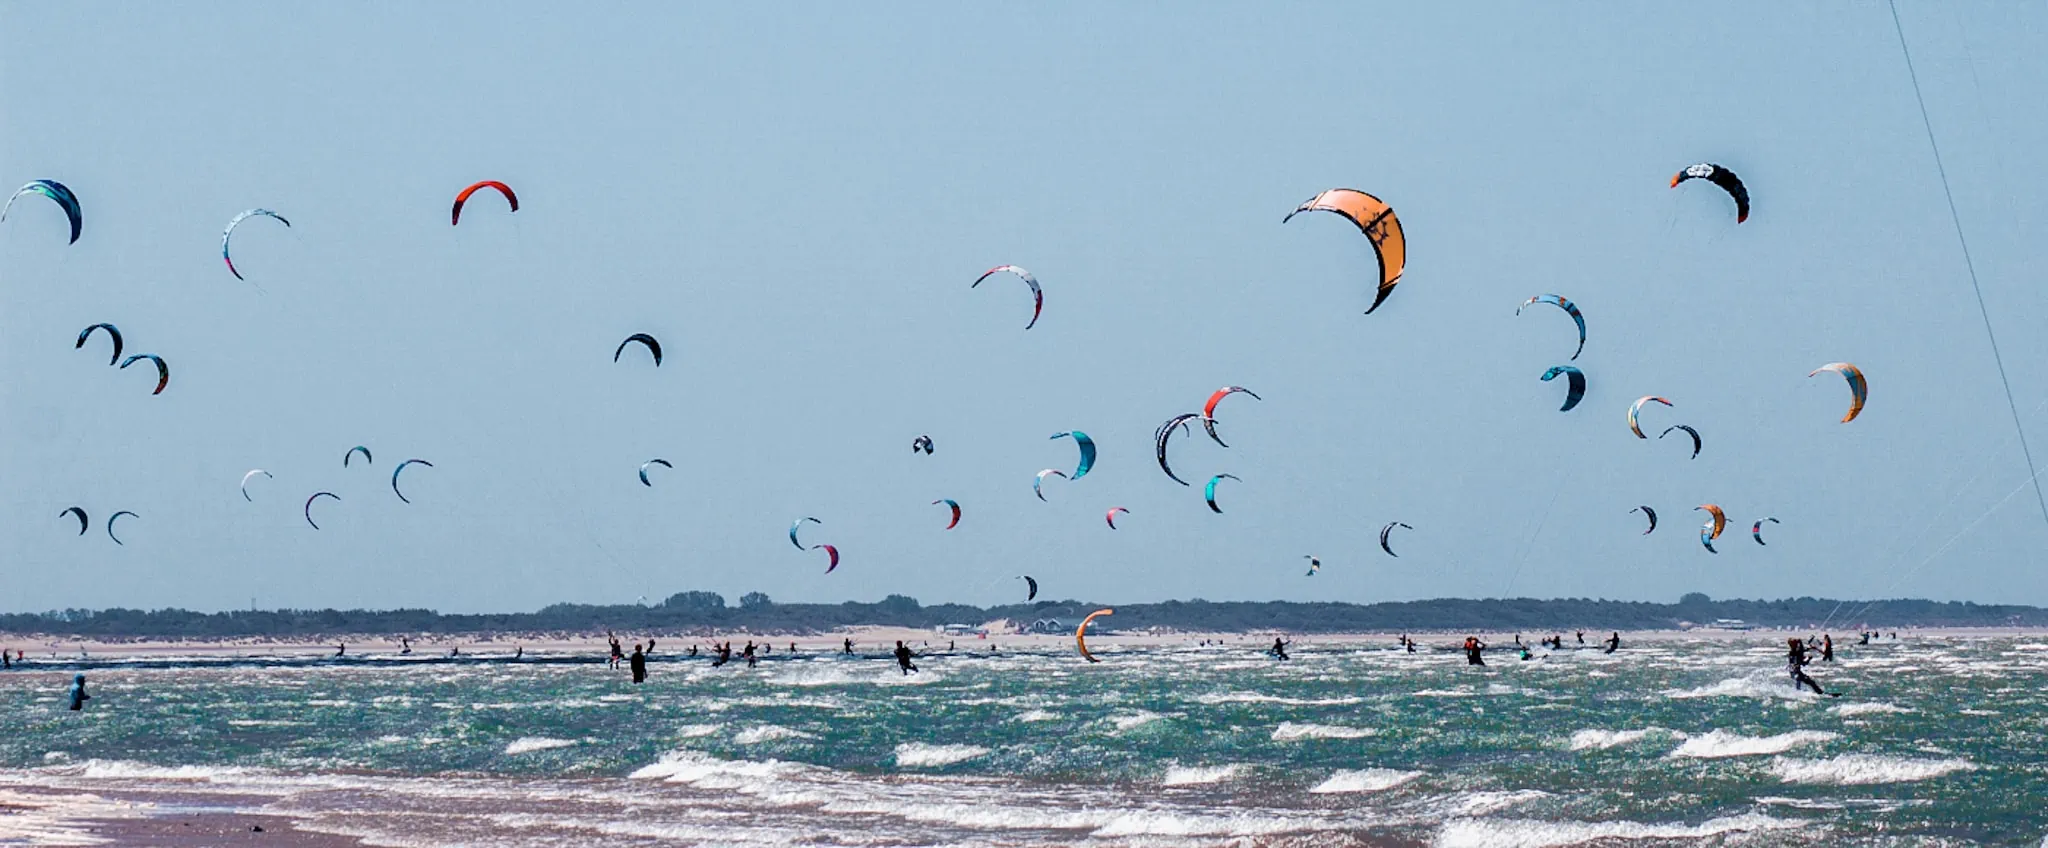 Drukke plek met kitesurfers, hier is het extra belangrijk om de kite surfregels toe te passen.